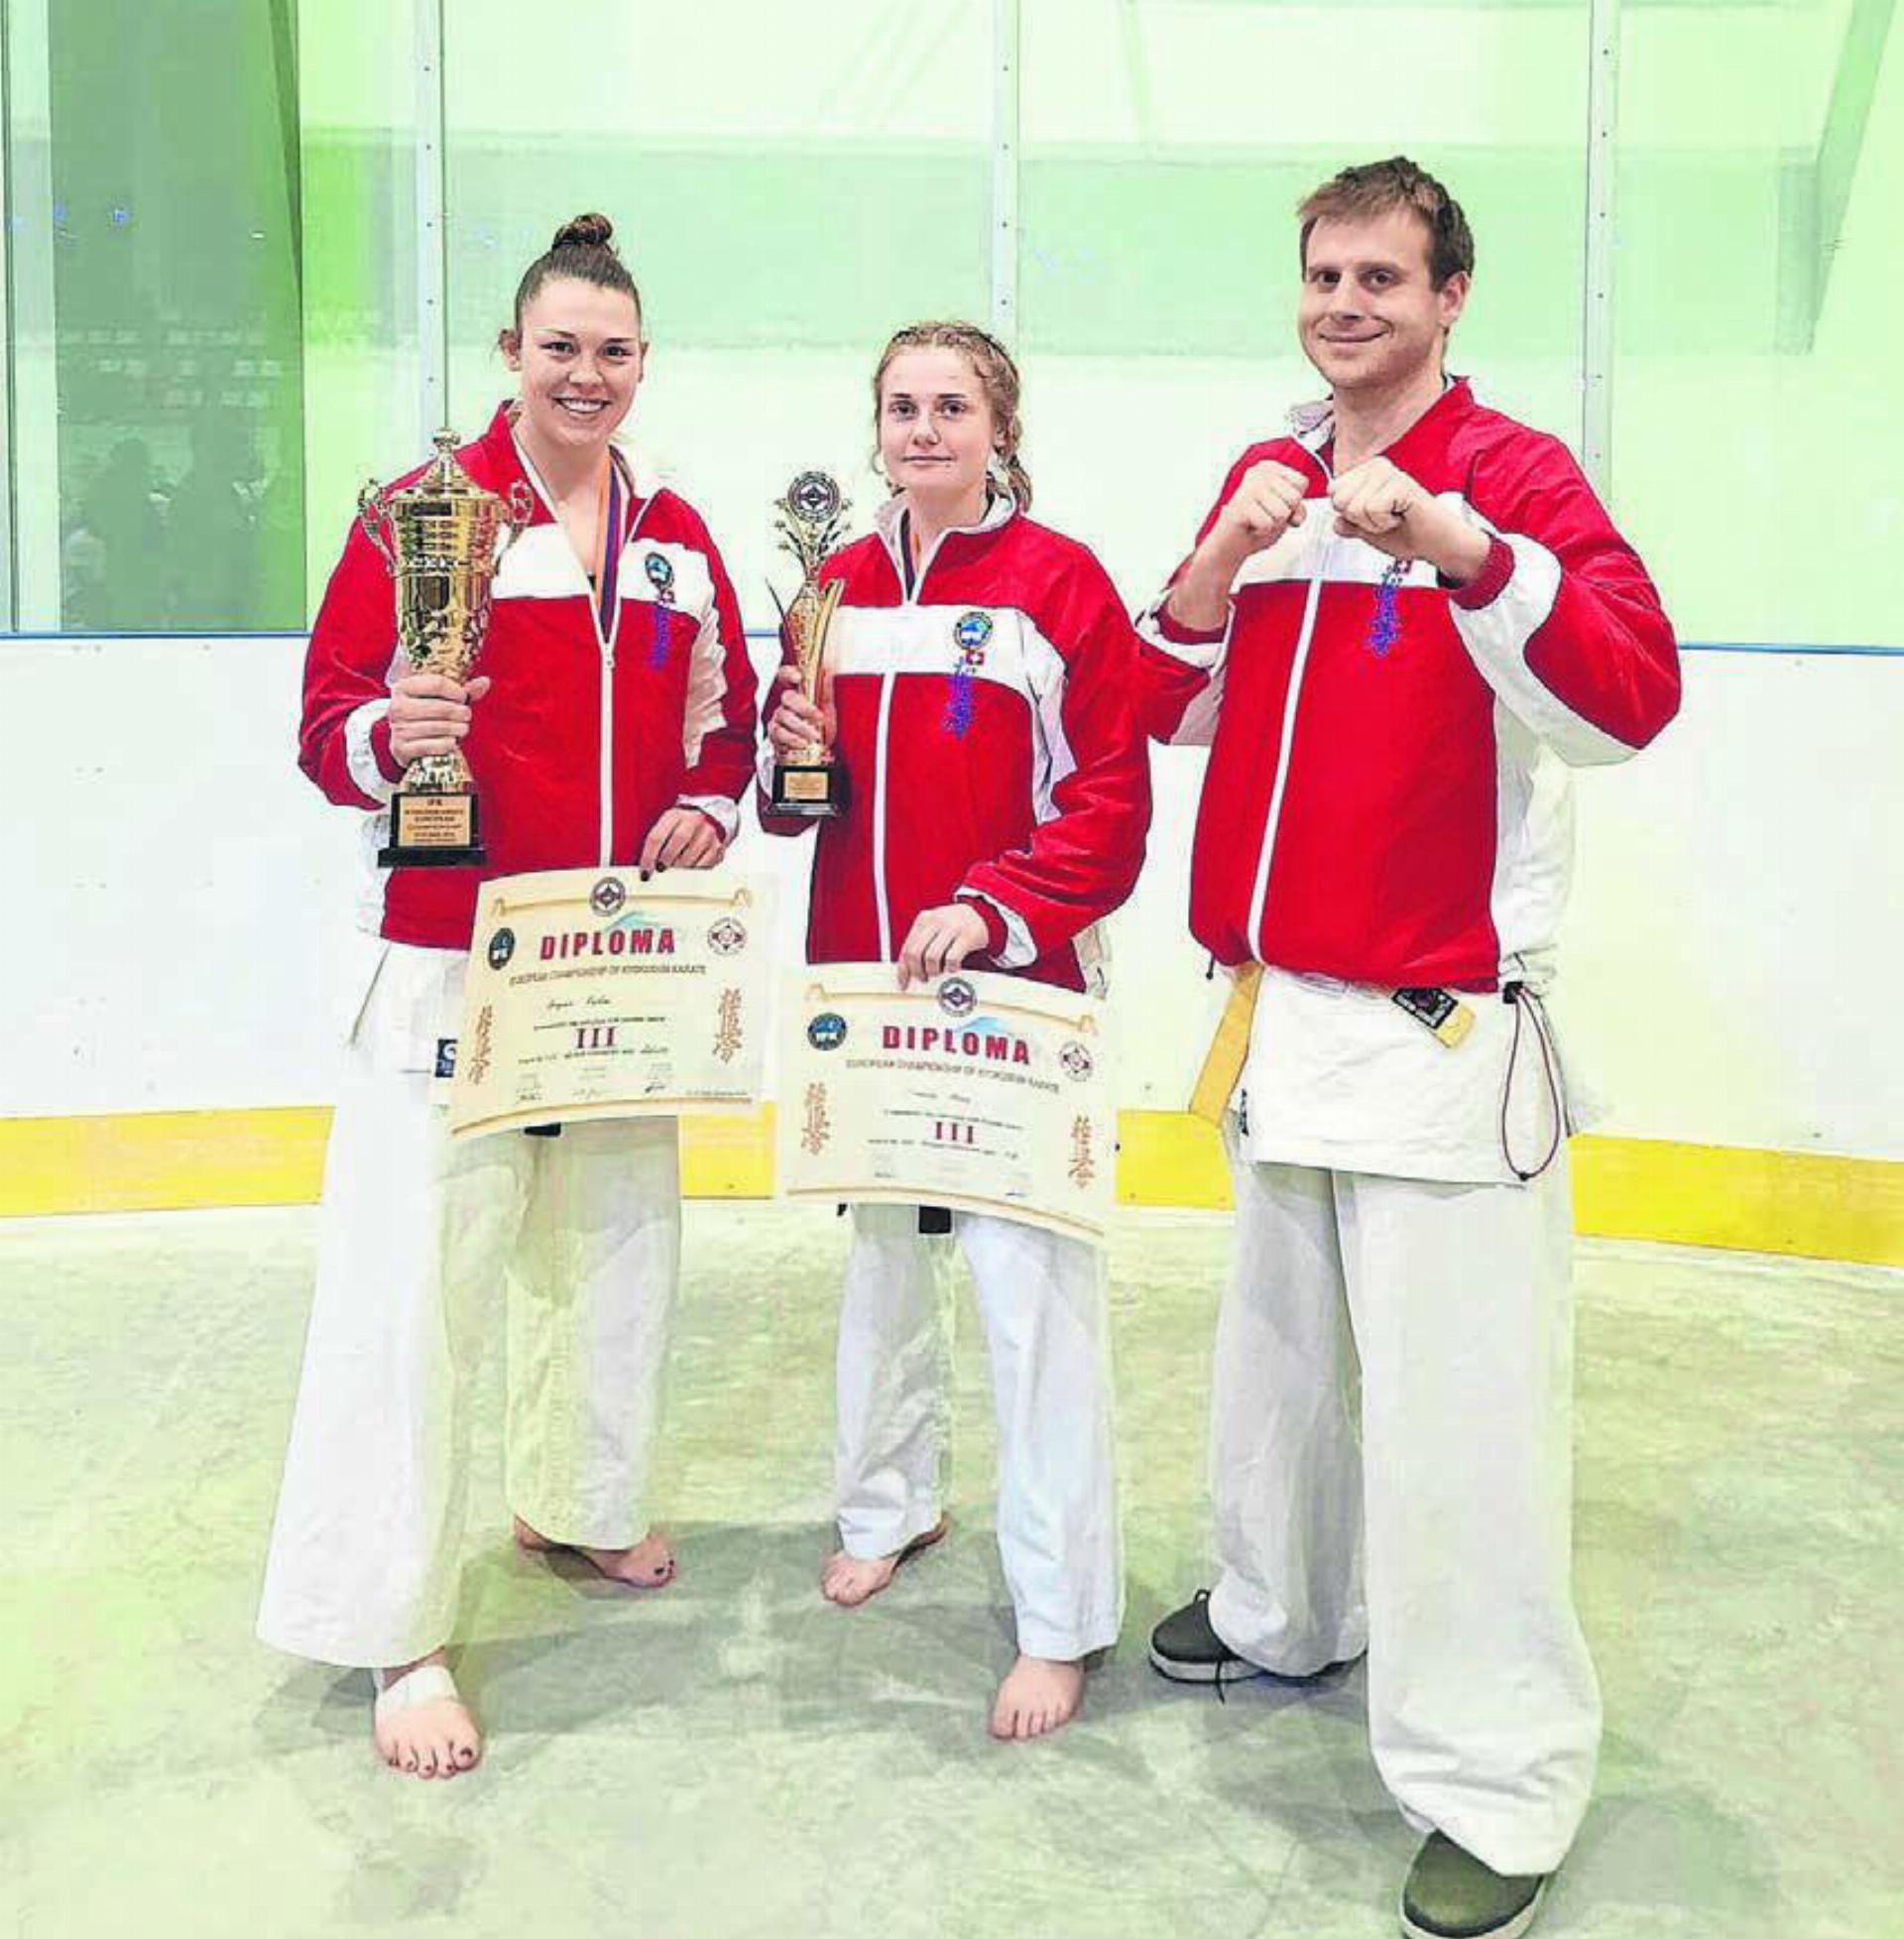 Angela Felber (links) und Simena Moos konnten an der Europameisterschaft jeweils eine Bronzemedaille gewinnen. Für David Wyss vom Karate-Club Anglikon war es das erste grössere internationale Turnier. Bild: zg